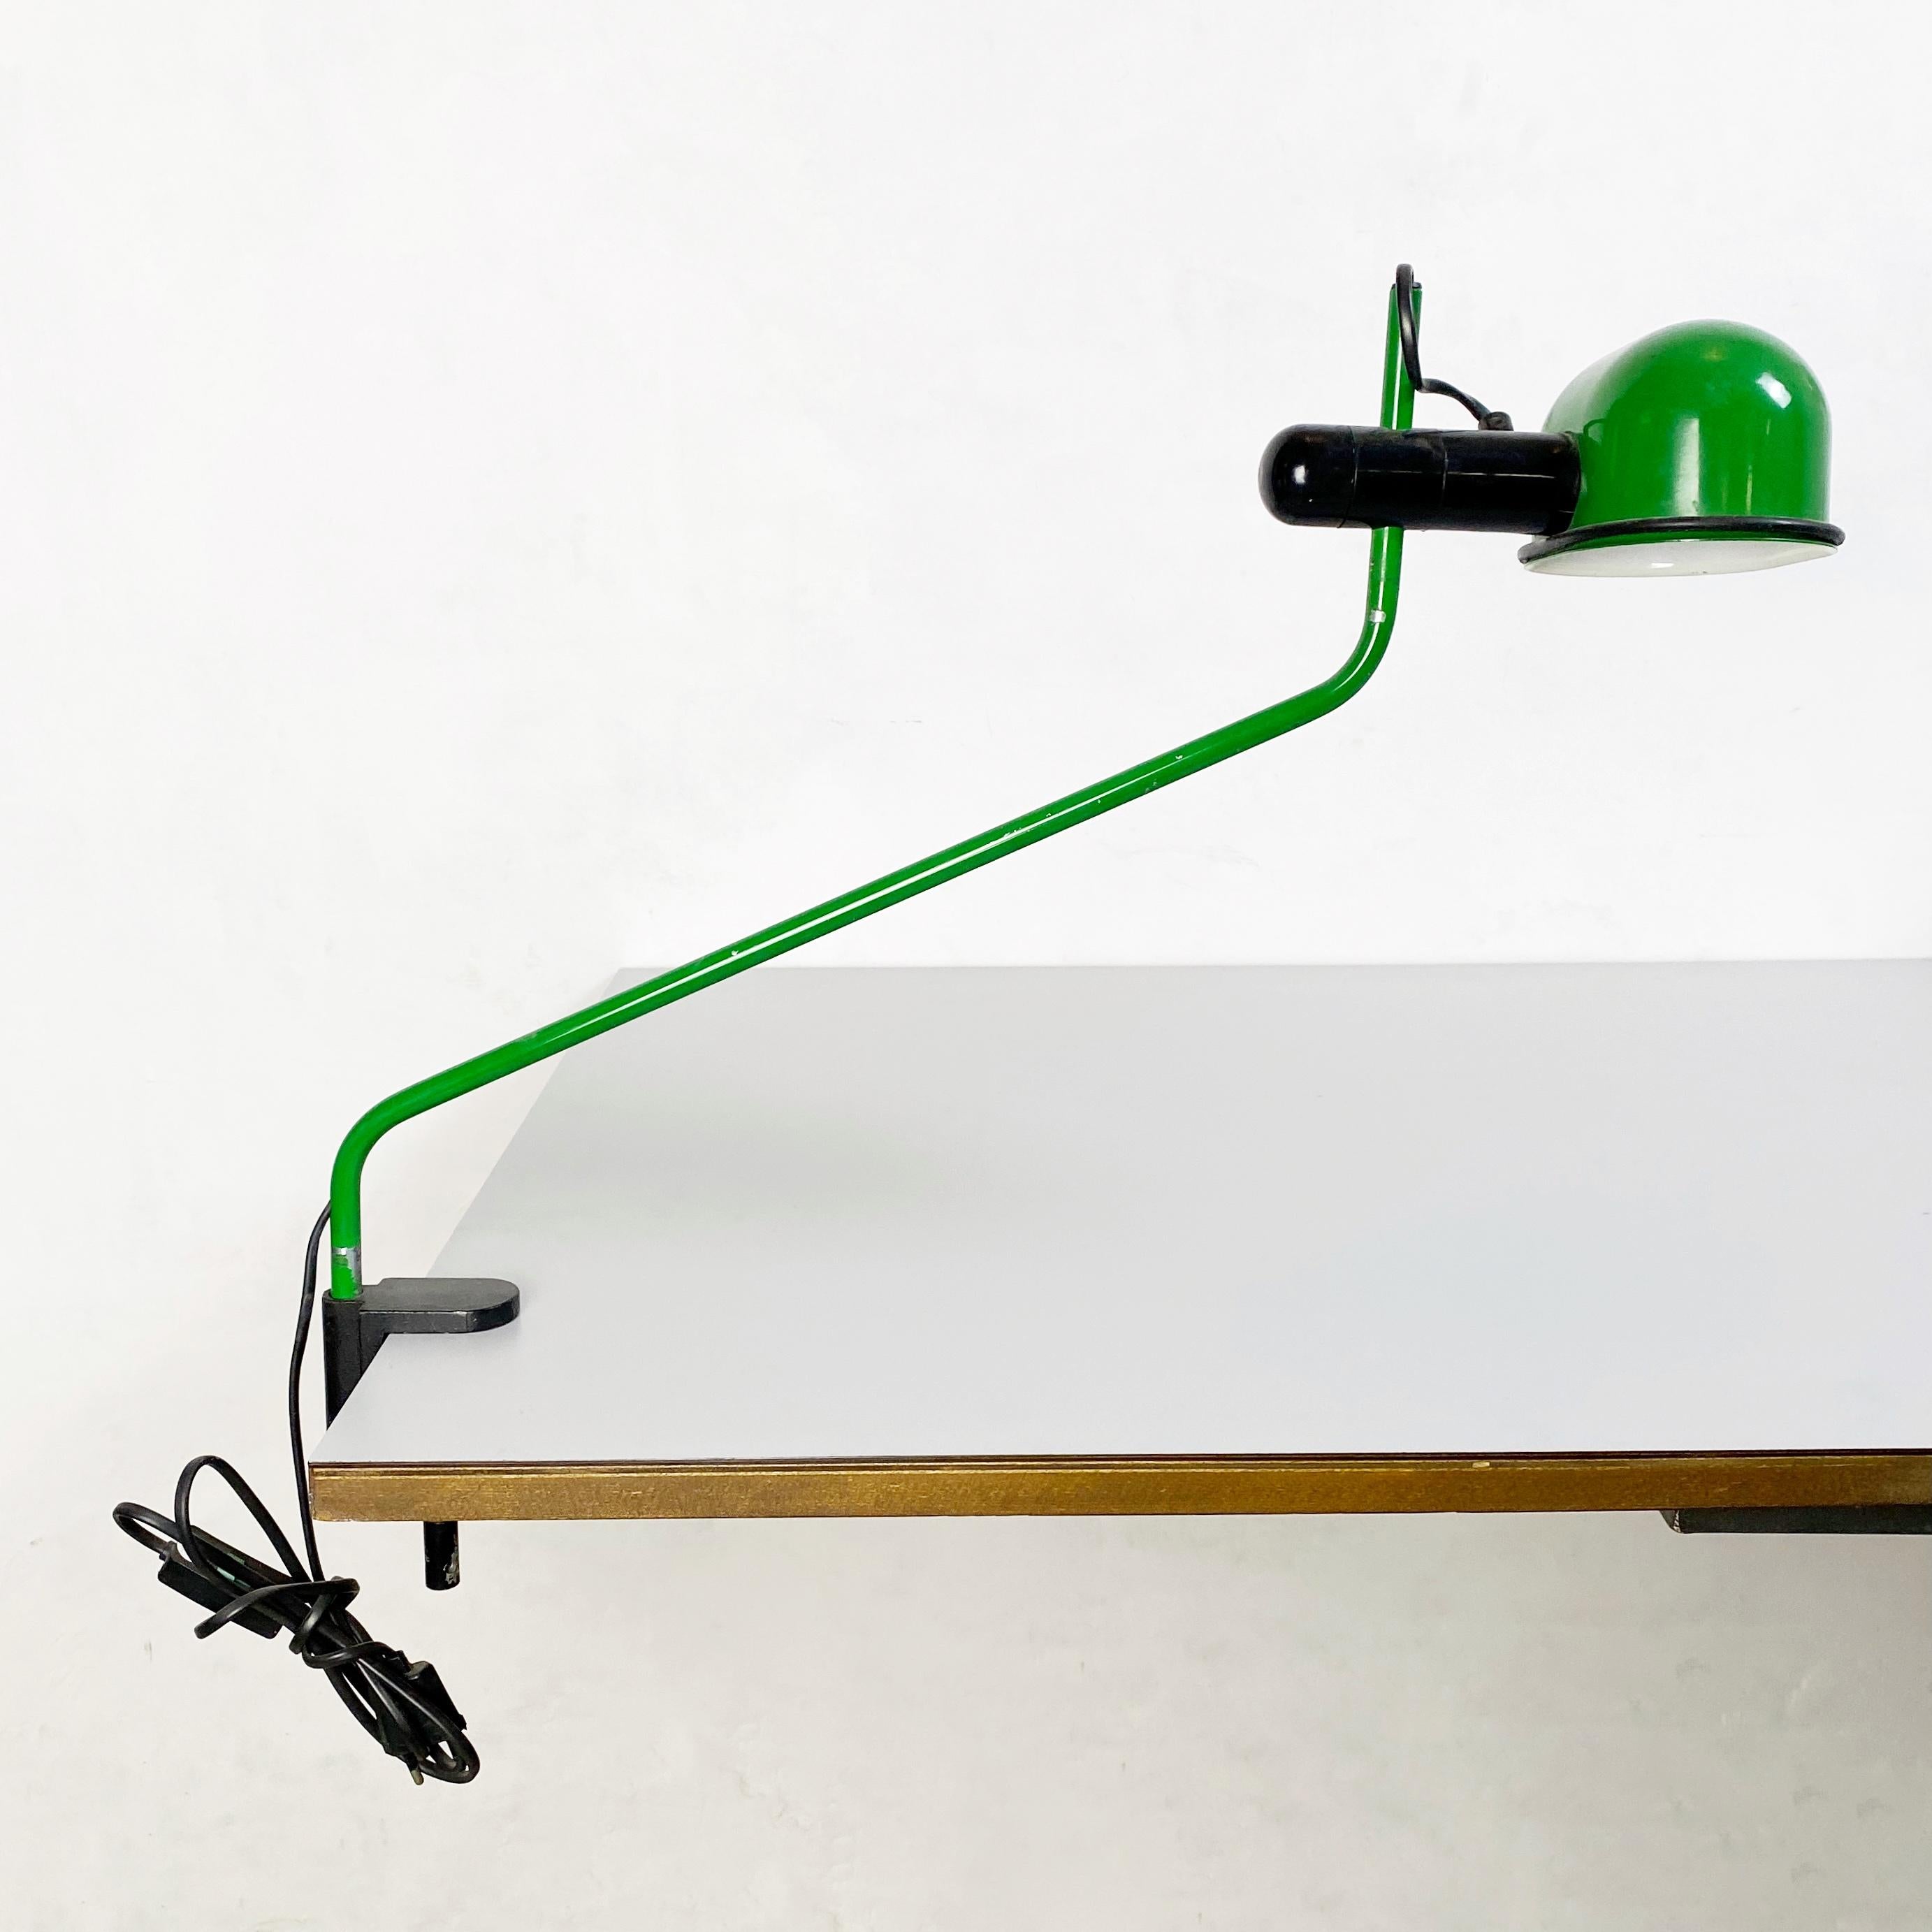 Lampe de table italienne à pince en métal vert, 1980
Lampe de table à pince en métal peint en vert et blanc avec des détails en plastique noir. Structure réglable.
Parfait pour travailler et courir avec une ampoule 220v et 120v
C'est une lampe très